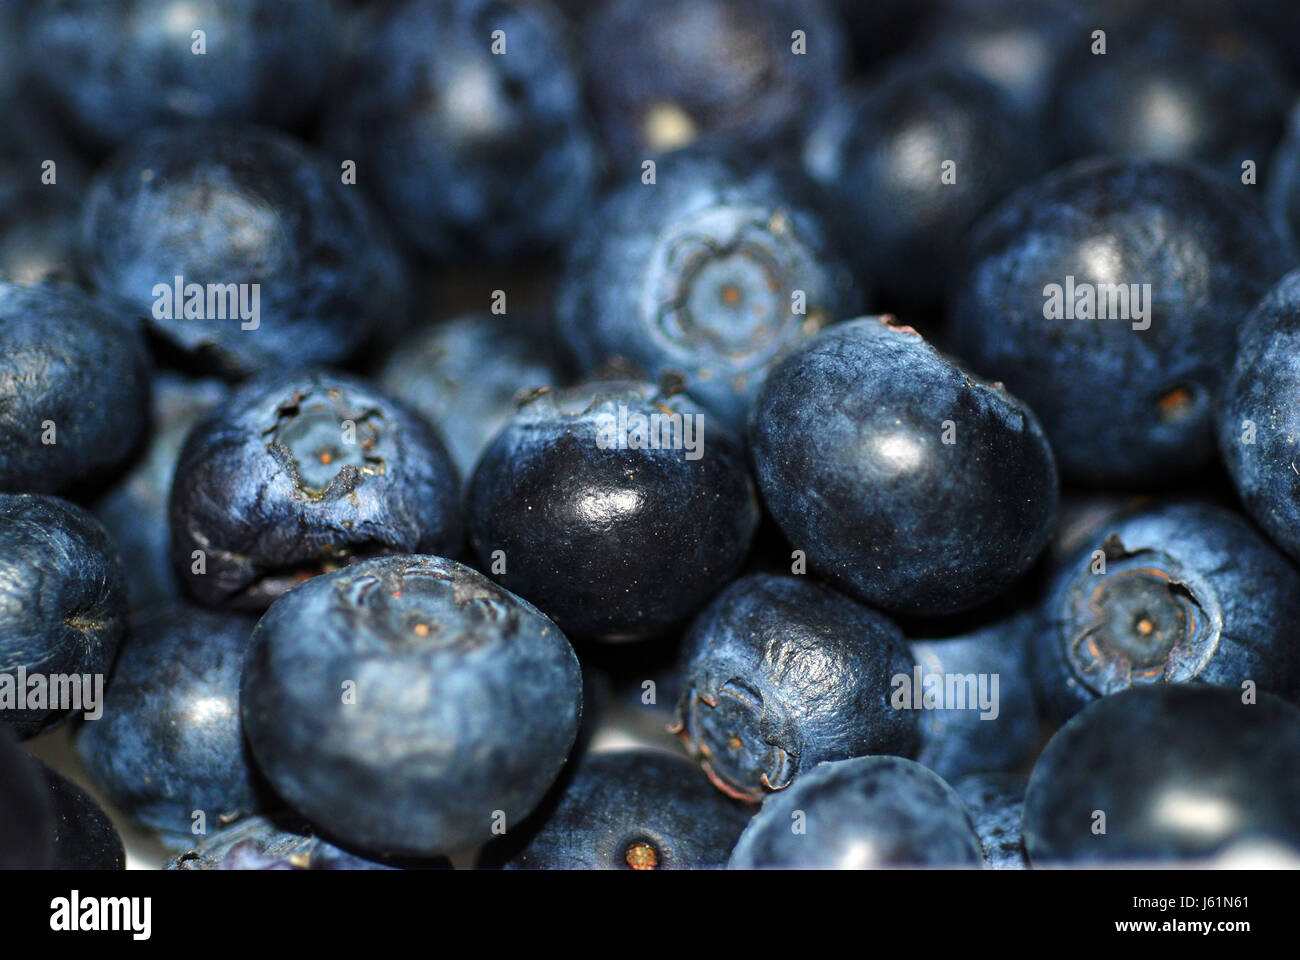 Aliment alimentaire fruit sucré myrtilles baies berry Bleu bleuet bleuets Banque D'Images